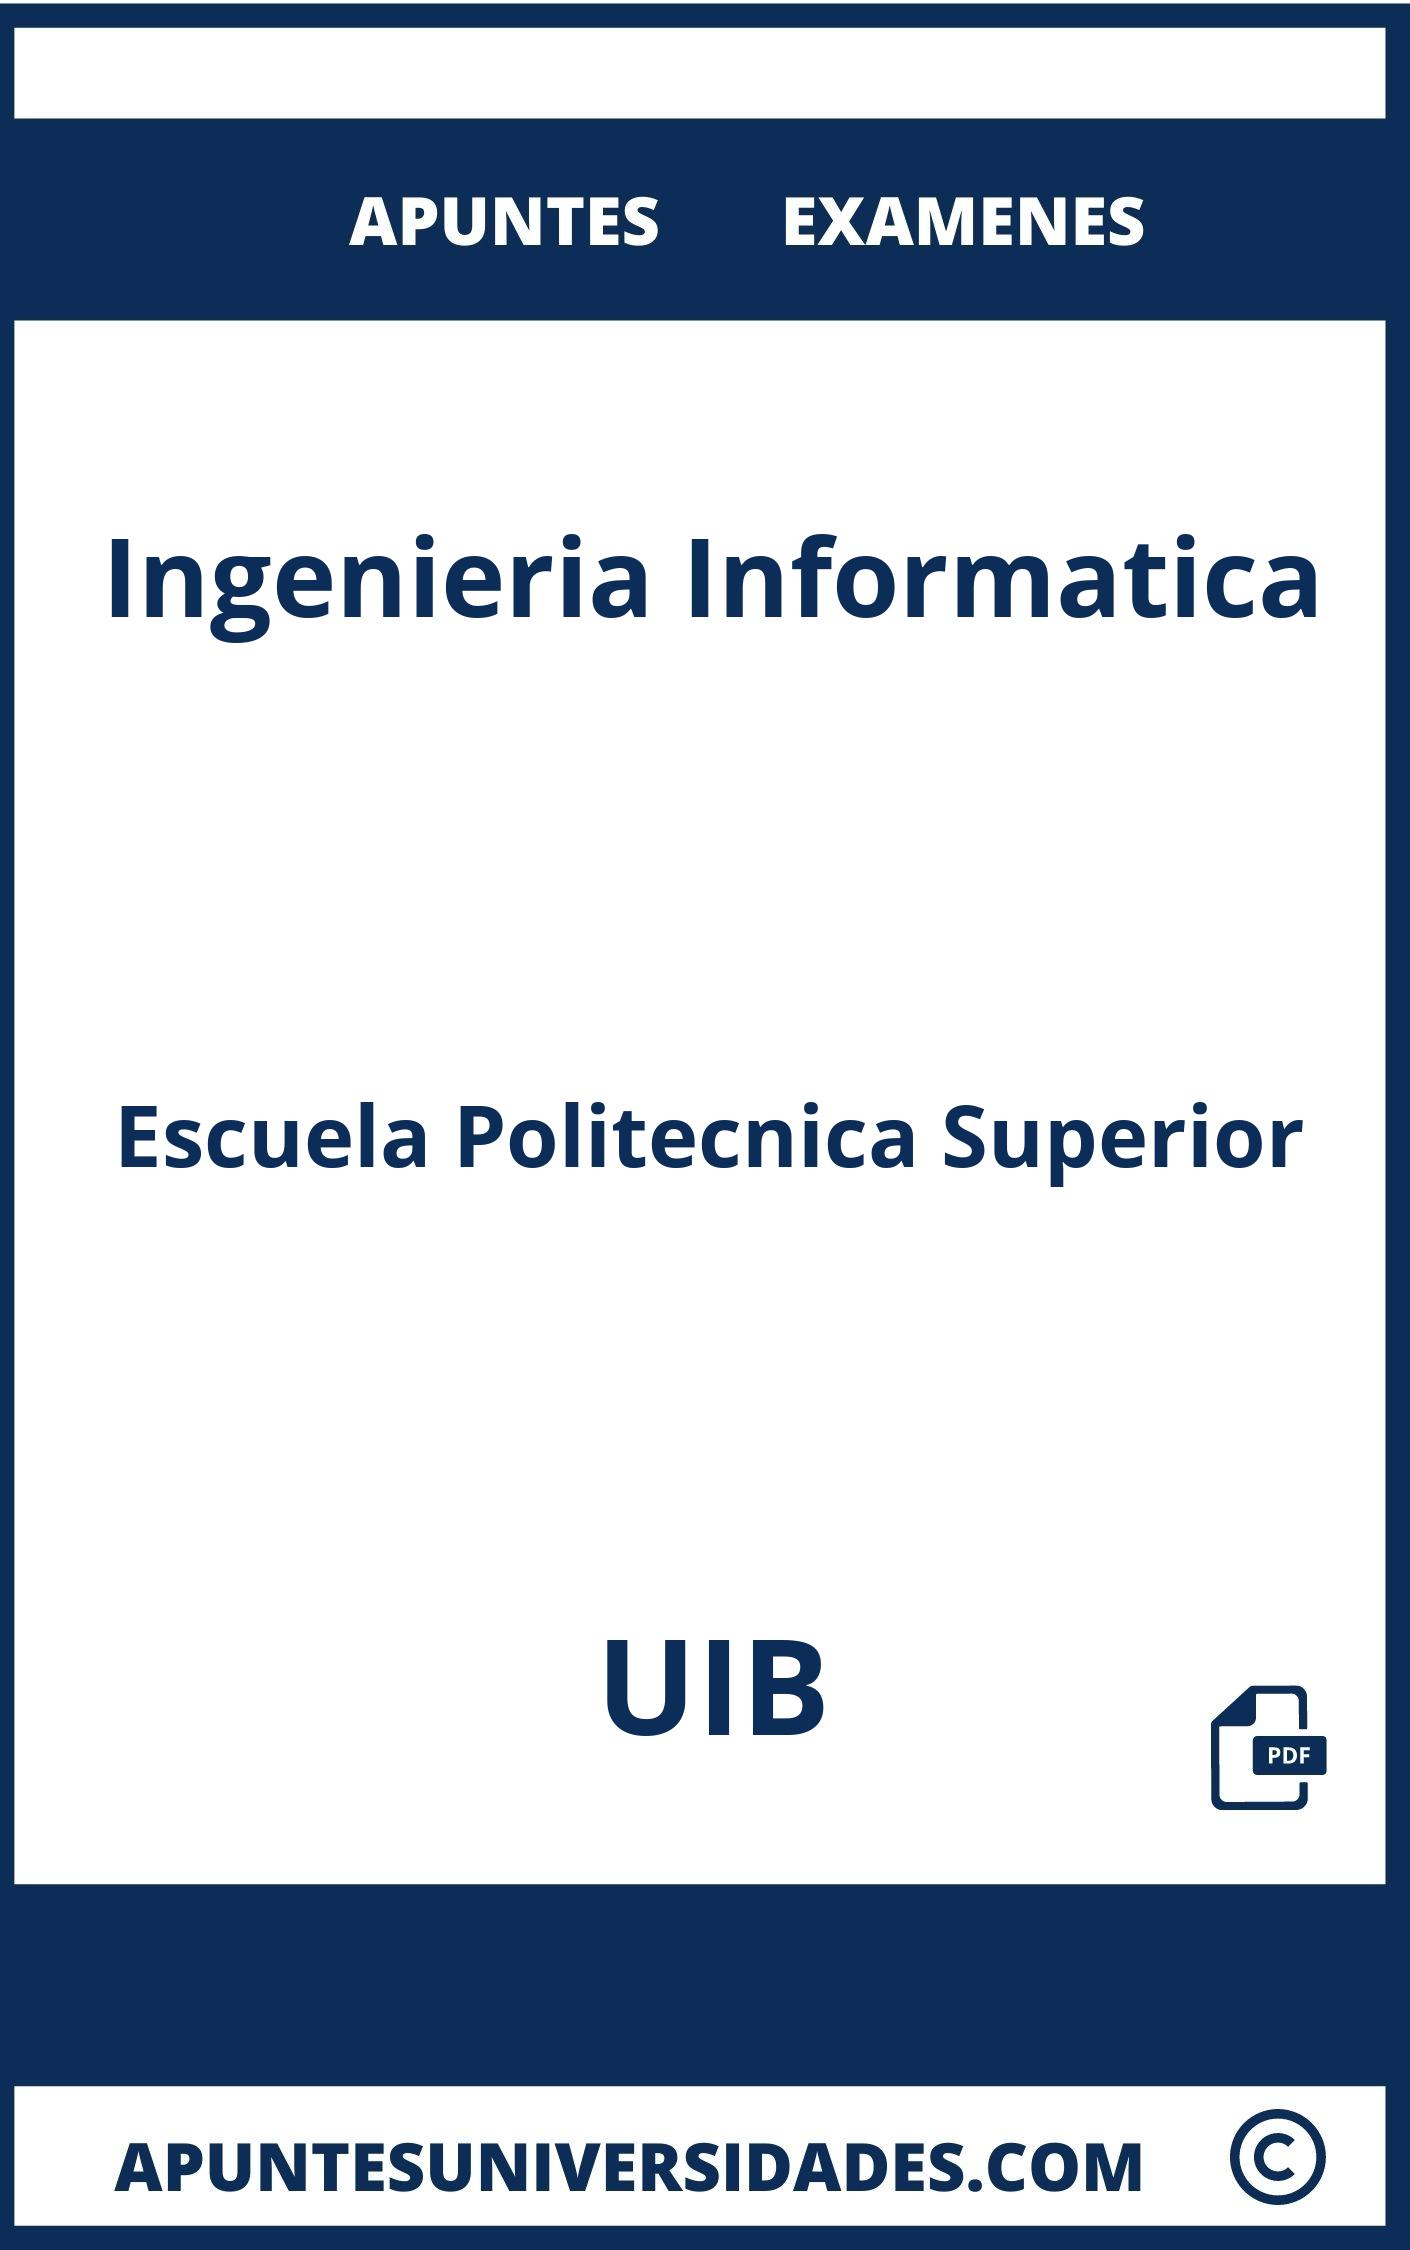 Examenes y Apuntes de Ingenieria Informatica UIB